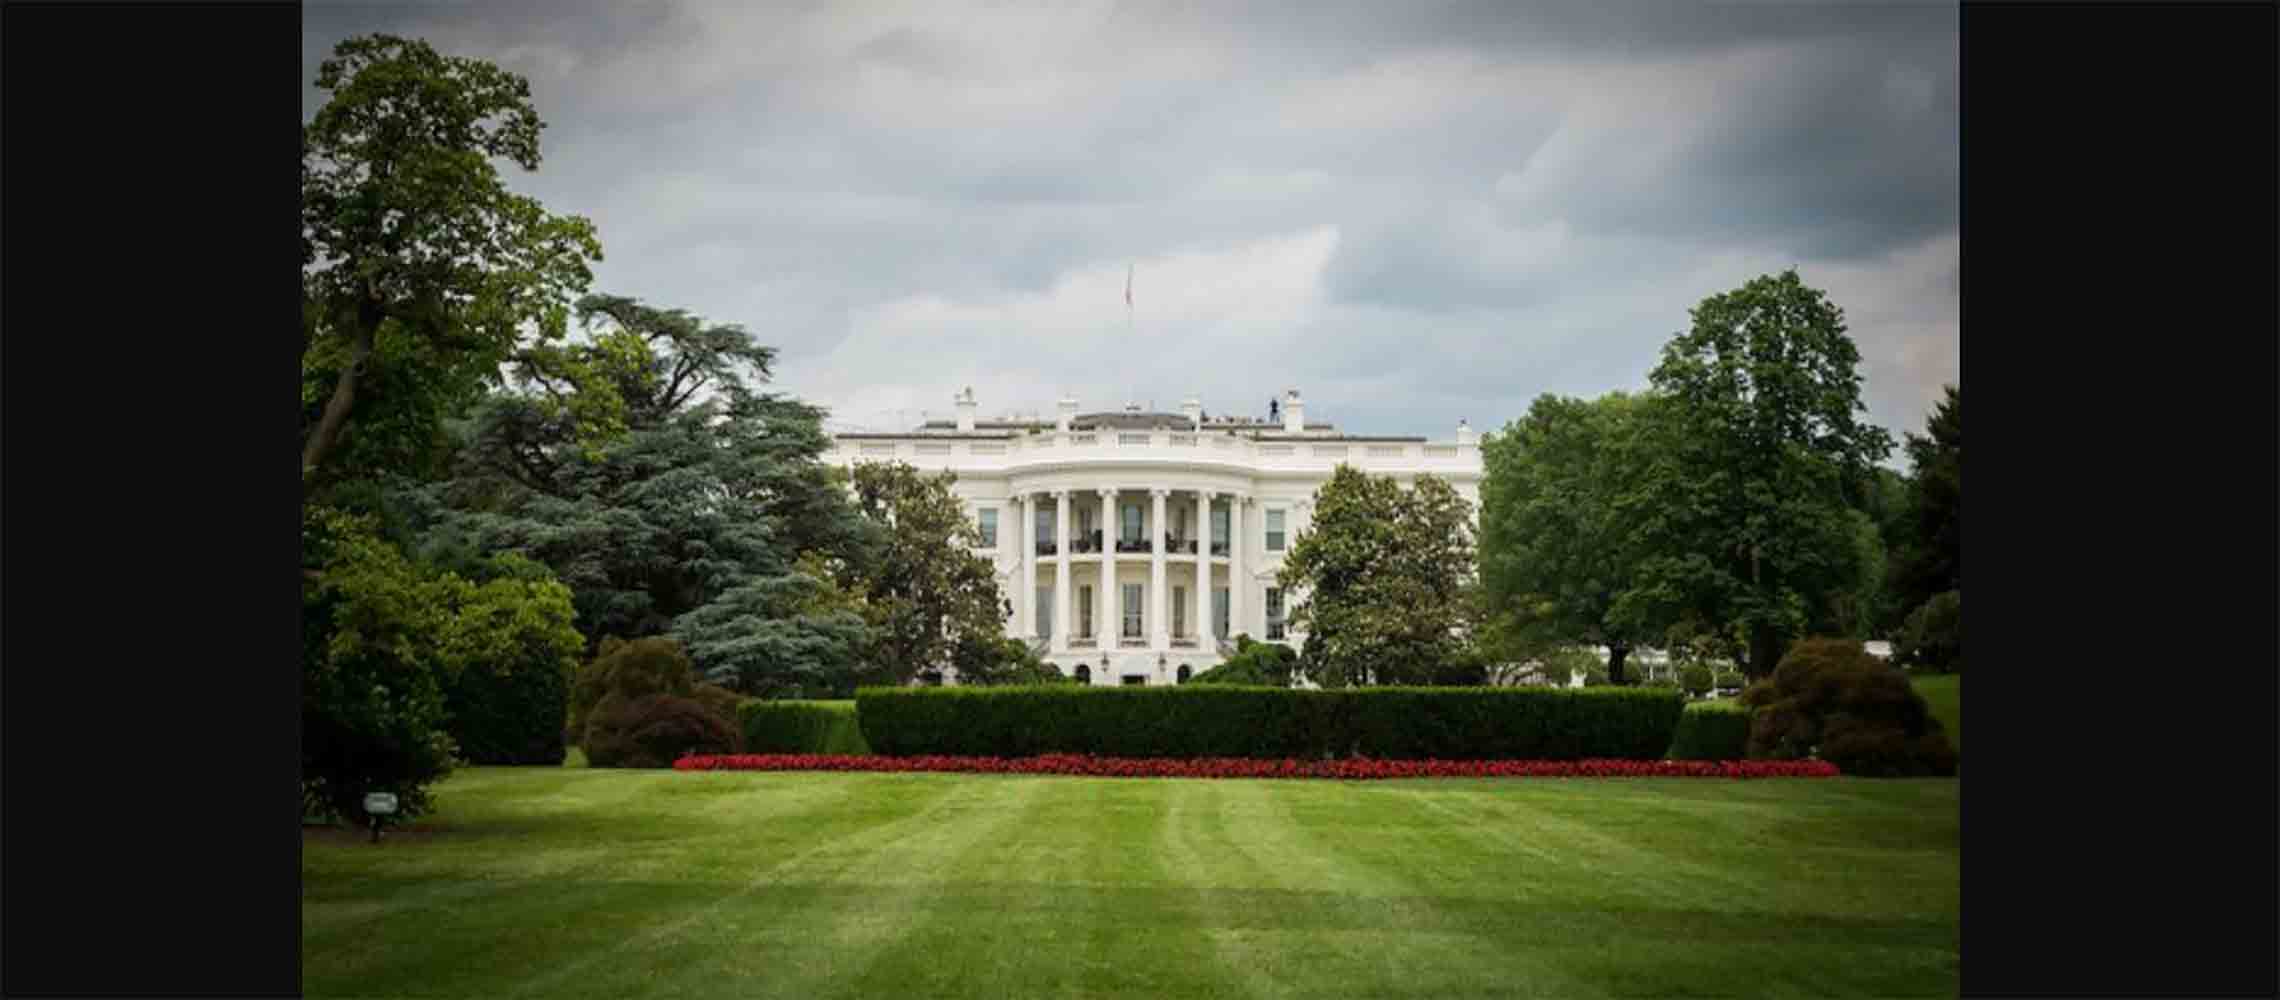 White_House